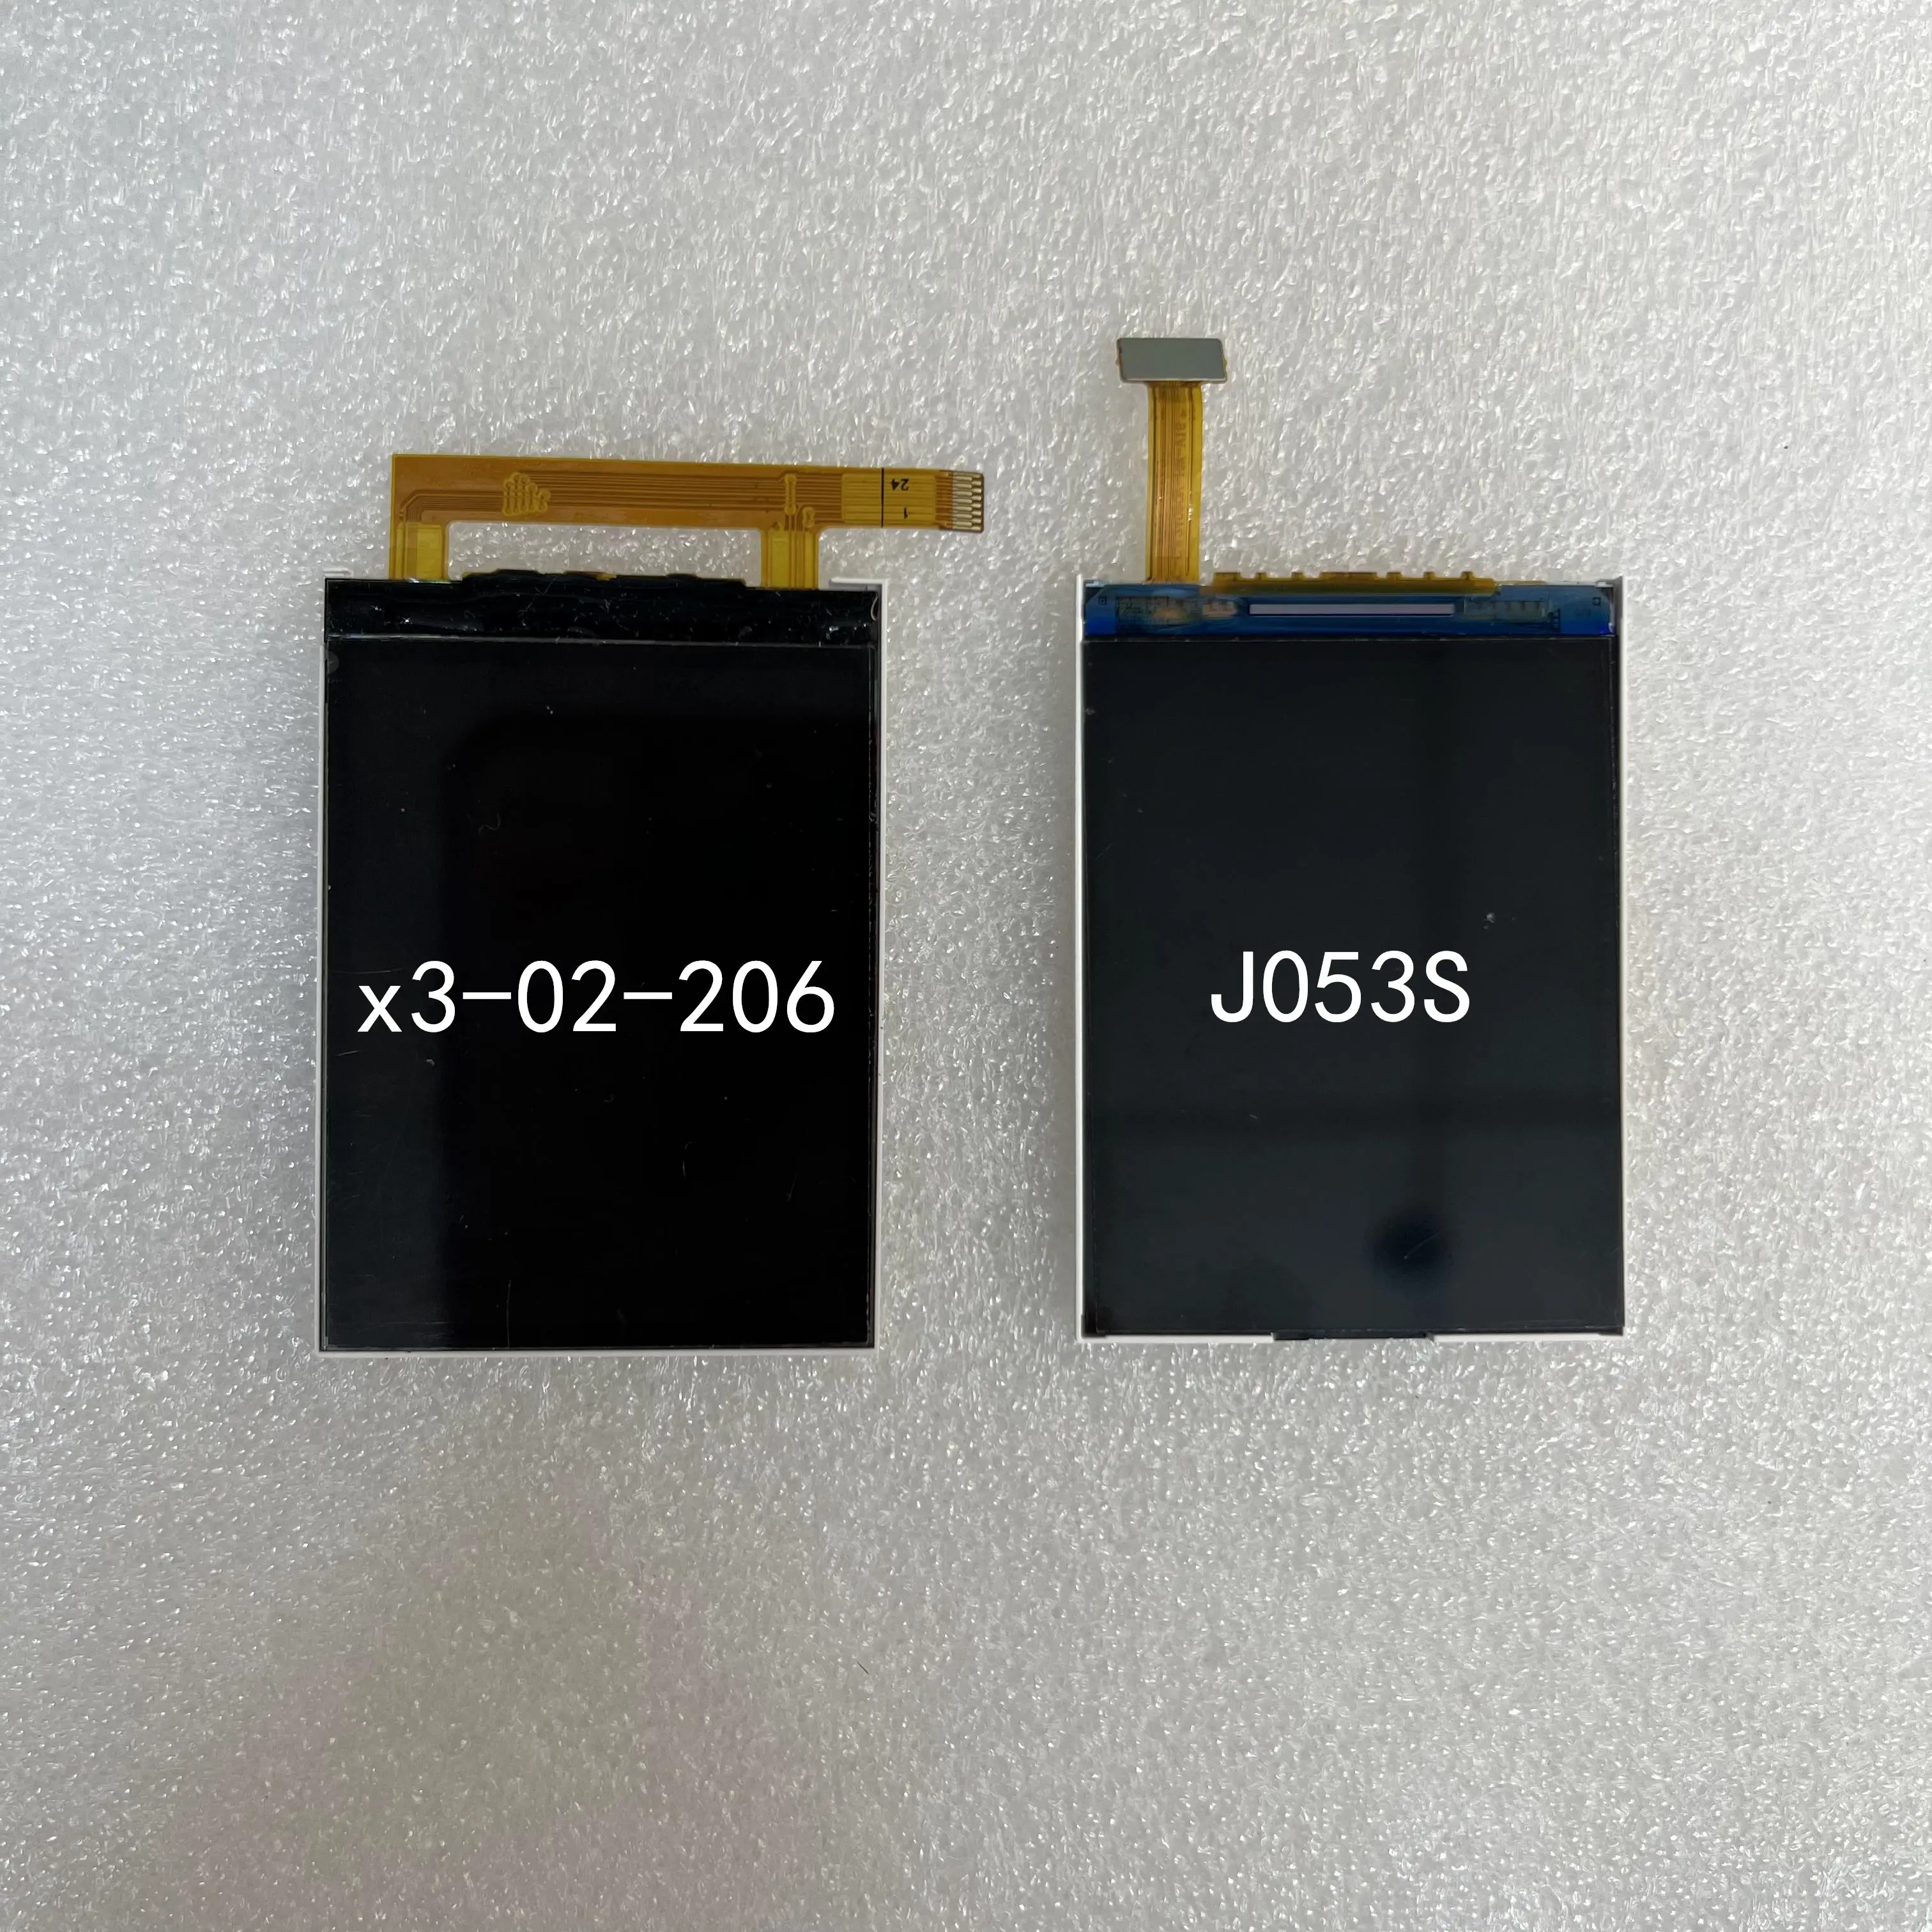 LCD display model x3-02-206 model J053s For Nokia Phone TFT screen repair parts